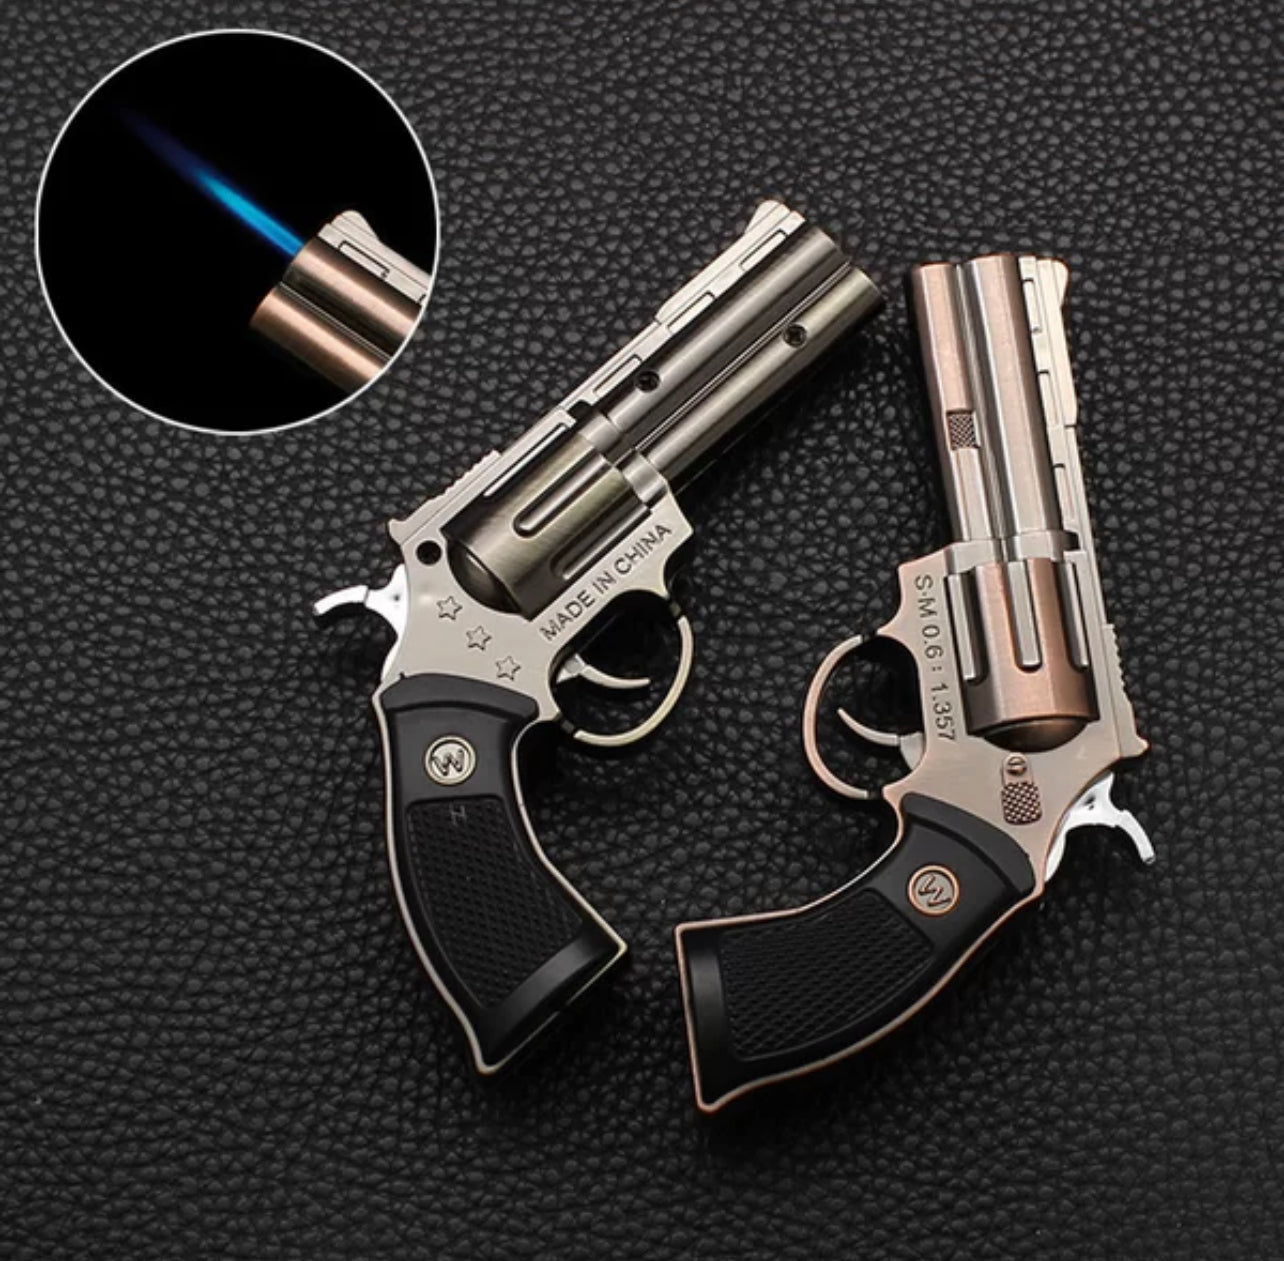 Replica Mini Revolver Refillable Torch Lighter